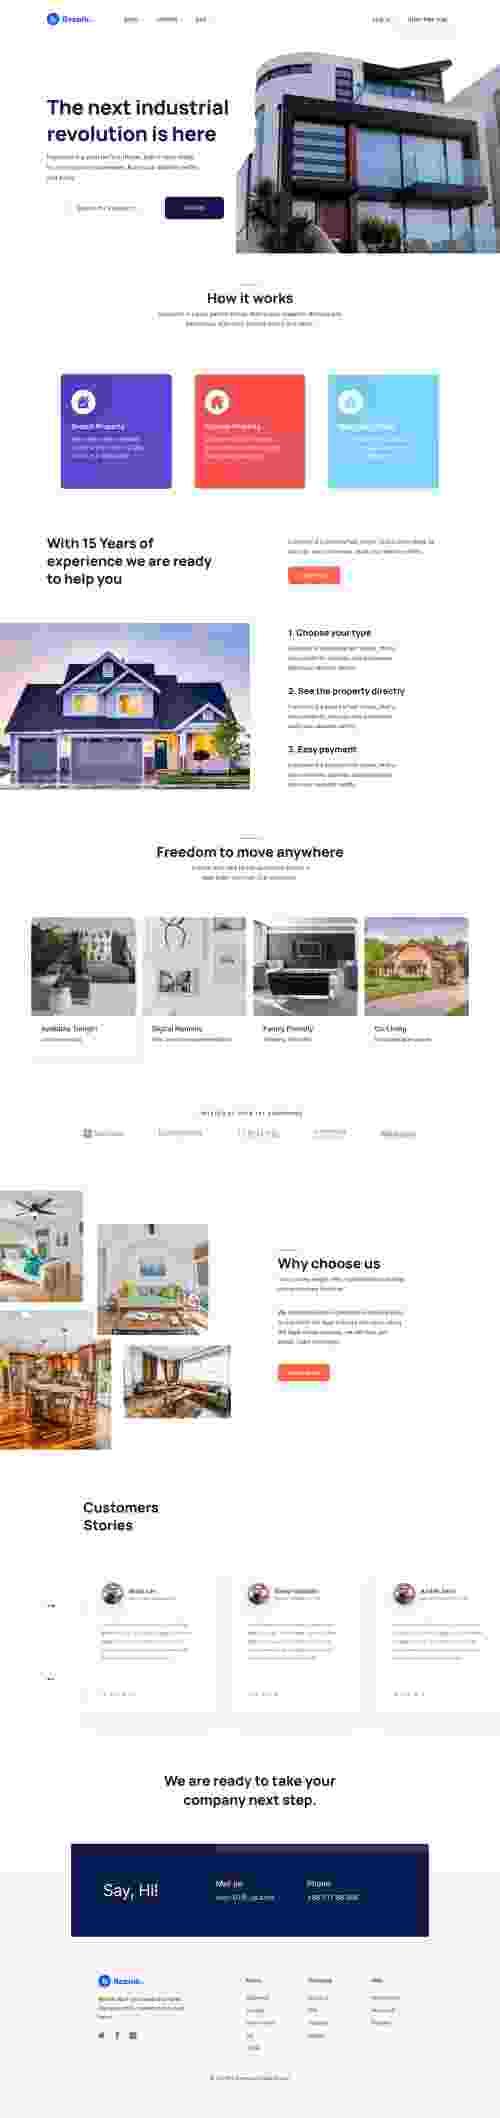 UIHut - Besnik Real Estate Website - 8090